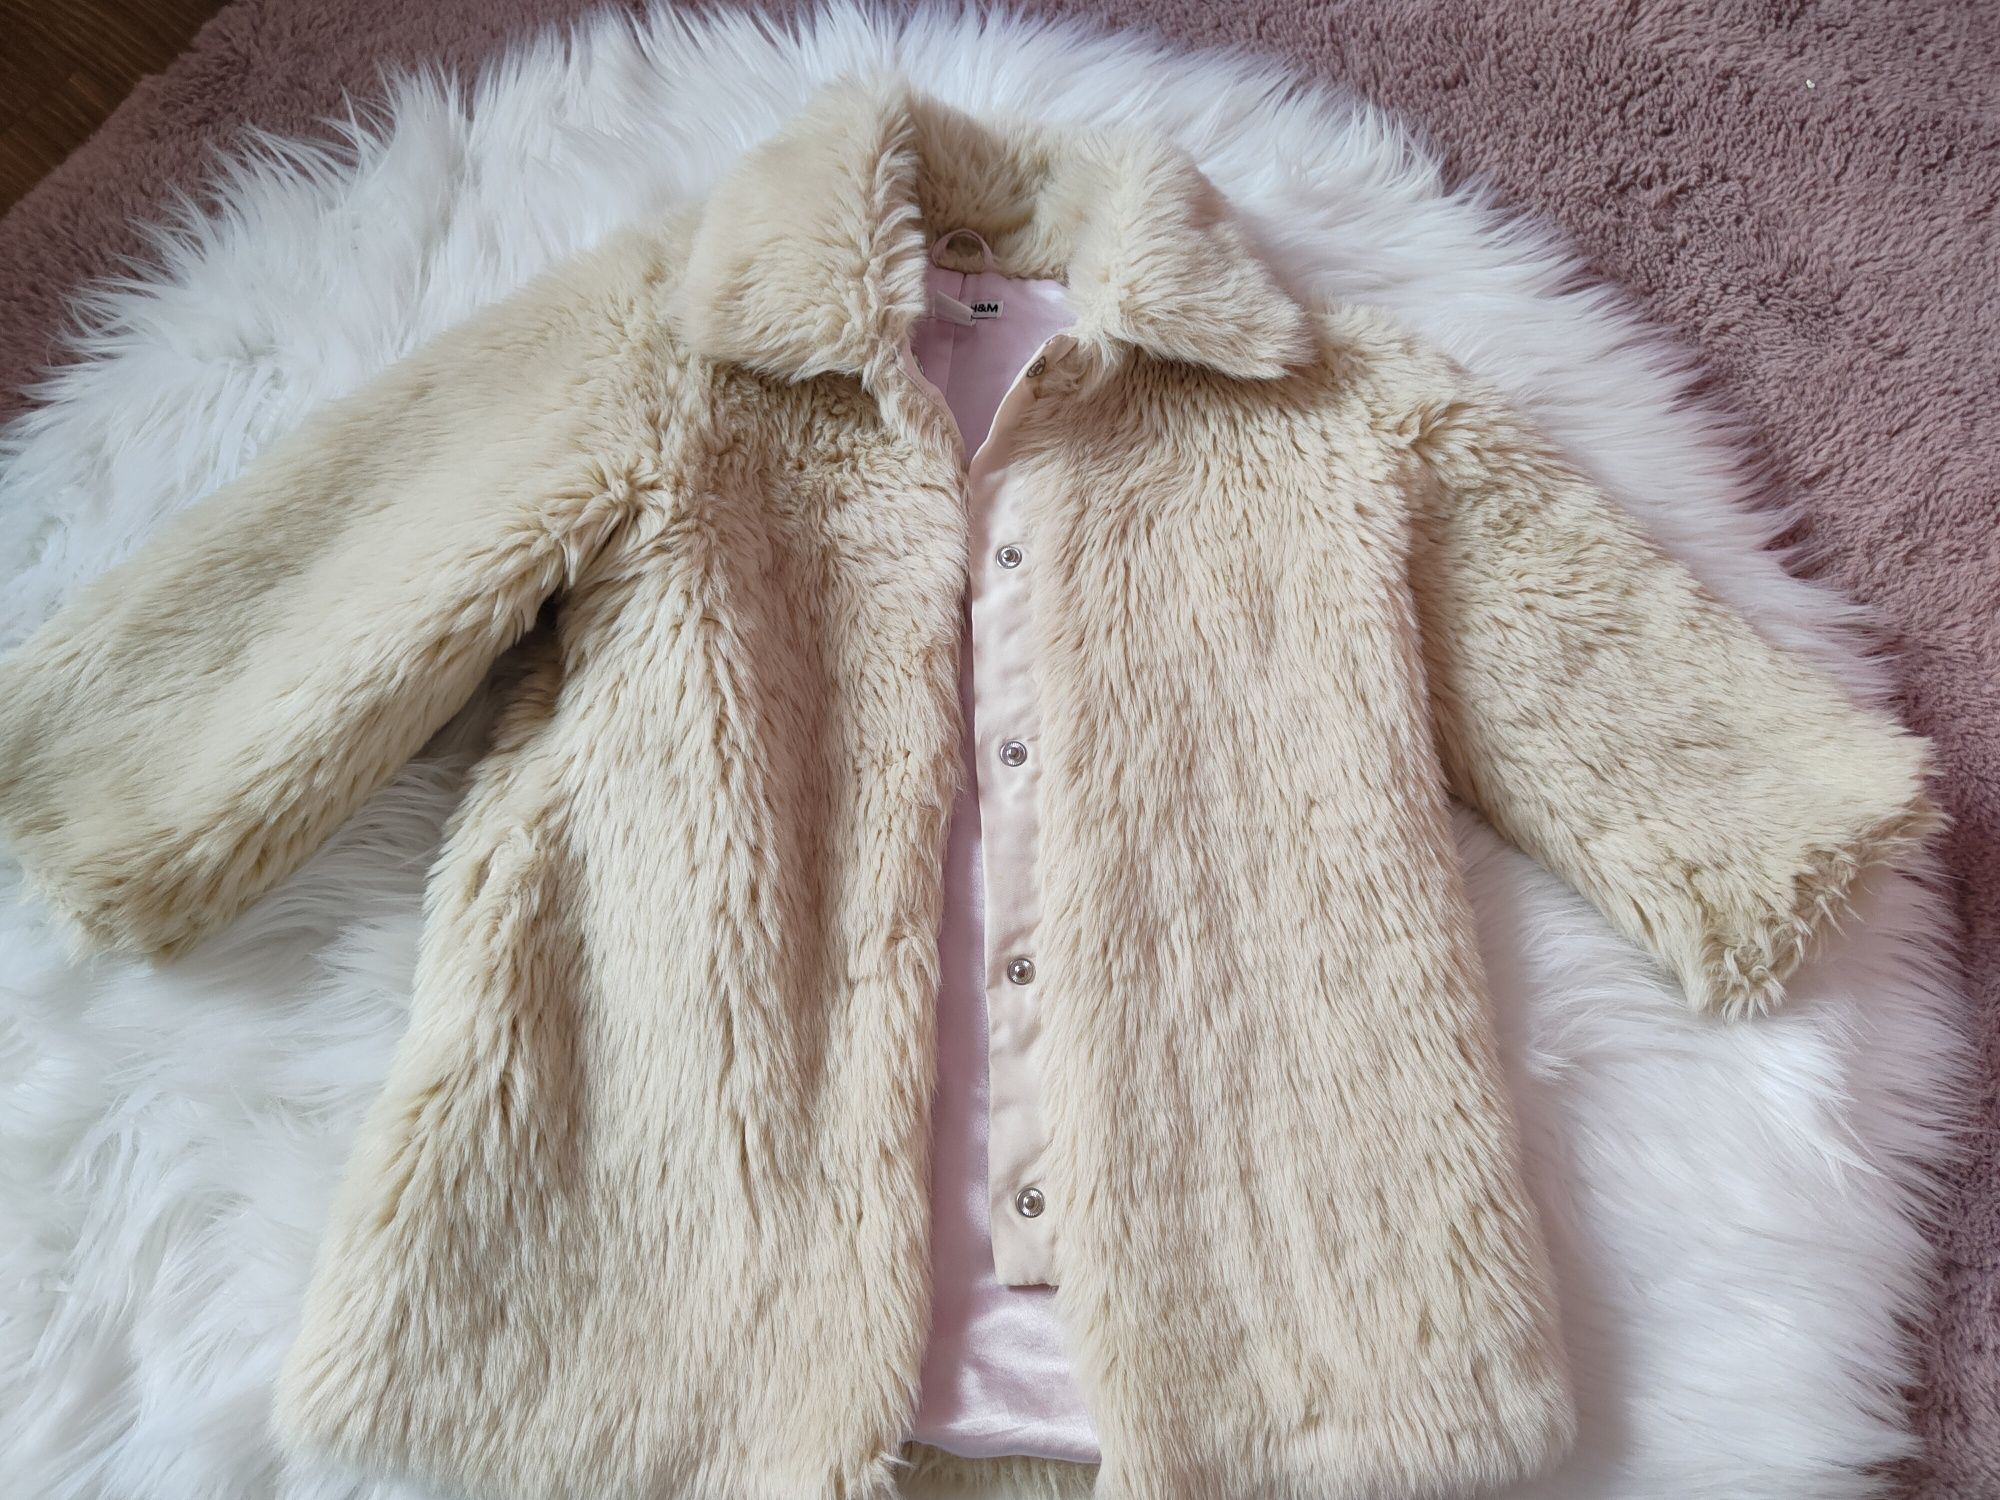 Futerko kożuszek płaszczy płaszczyk H&M 110 cm 4-5 lat cudo